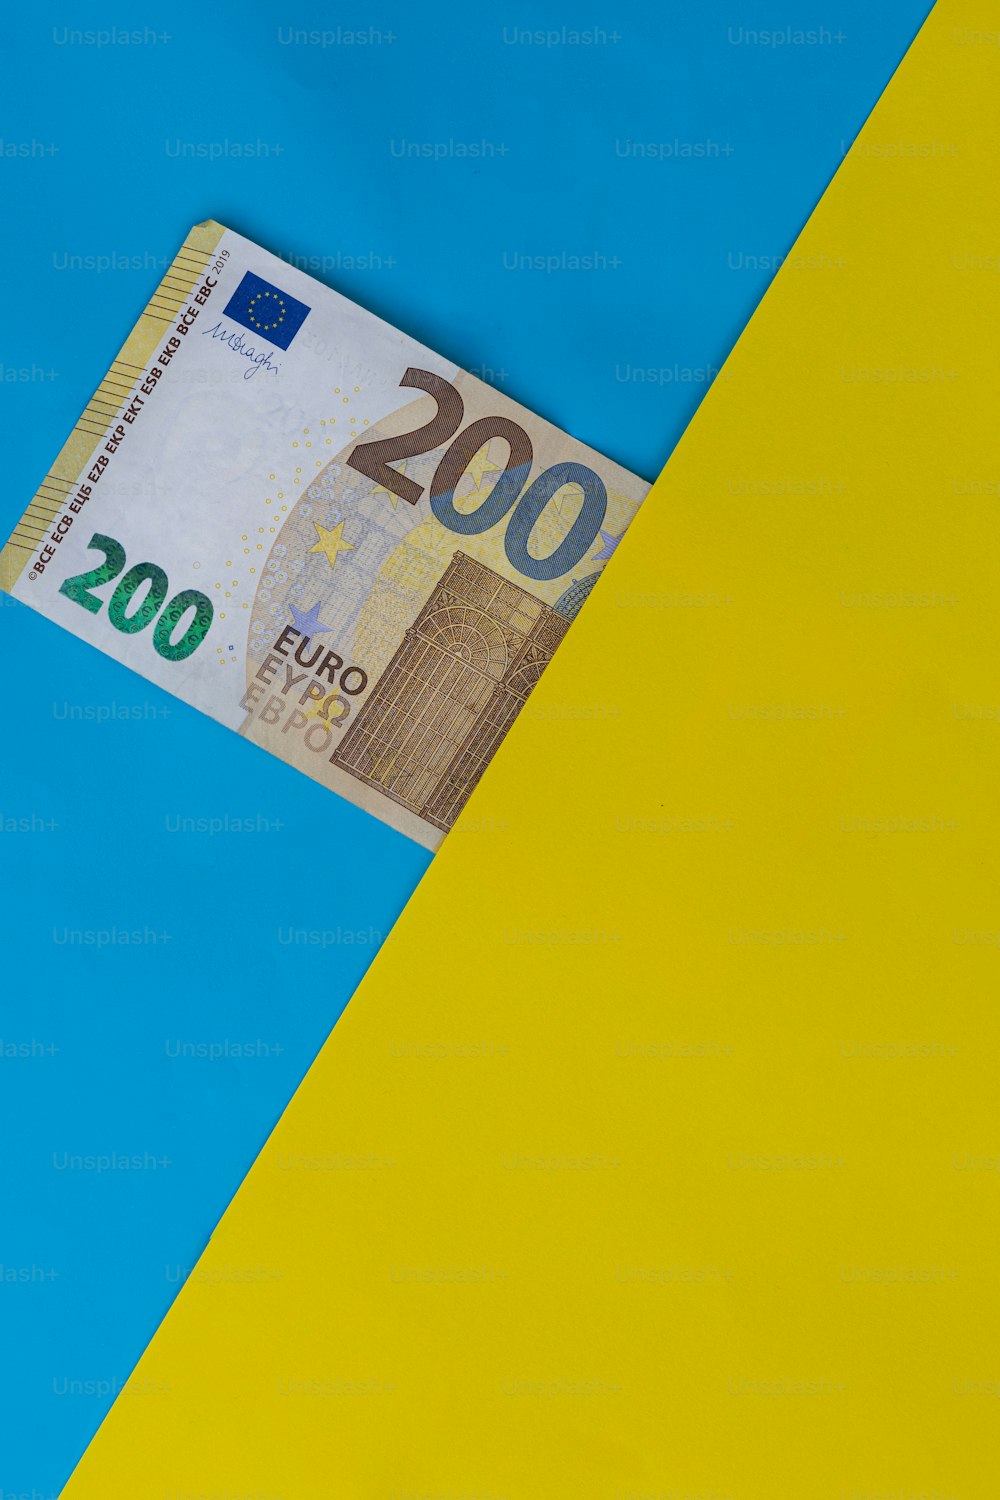 un billet de cent euros sortant d’un fond jaune et bleu